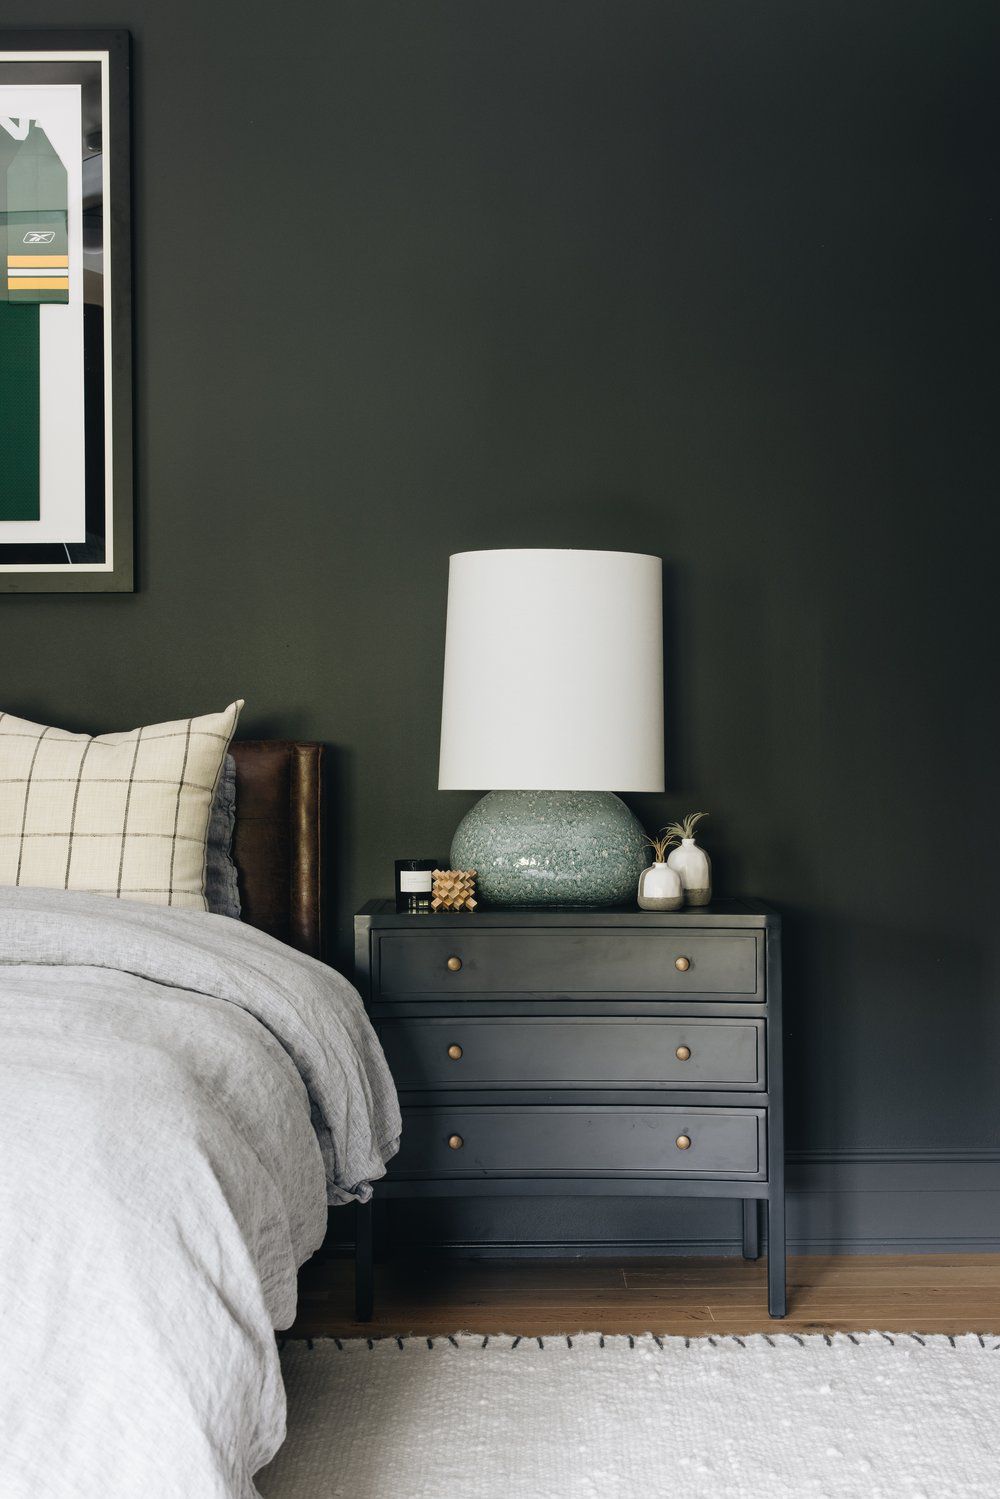 Mur vert foncé dans une chambre derrière une tête de lit en cuir